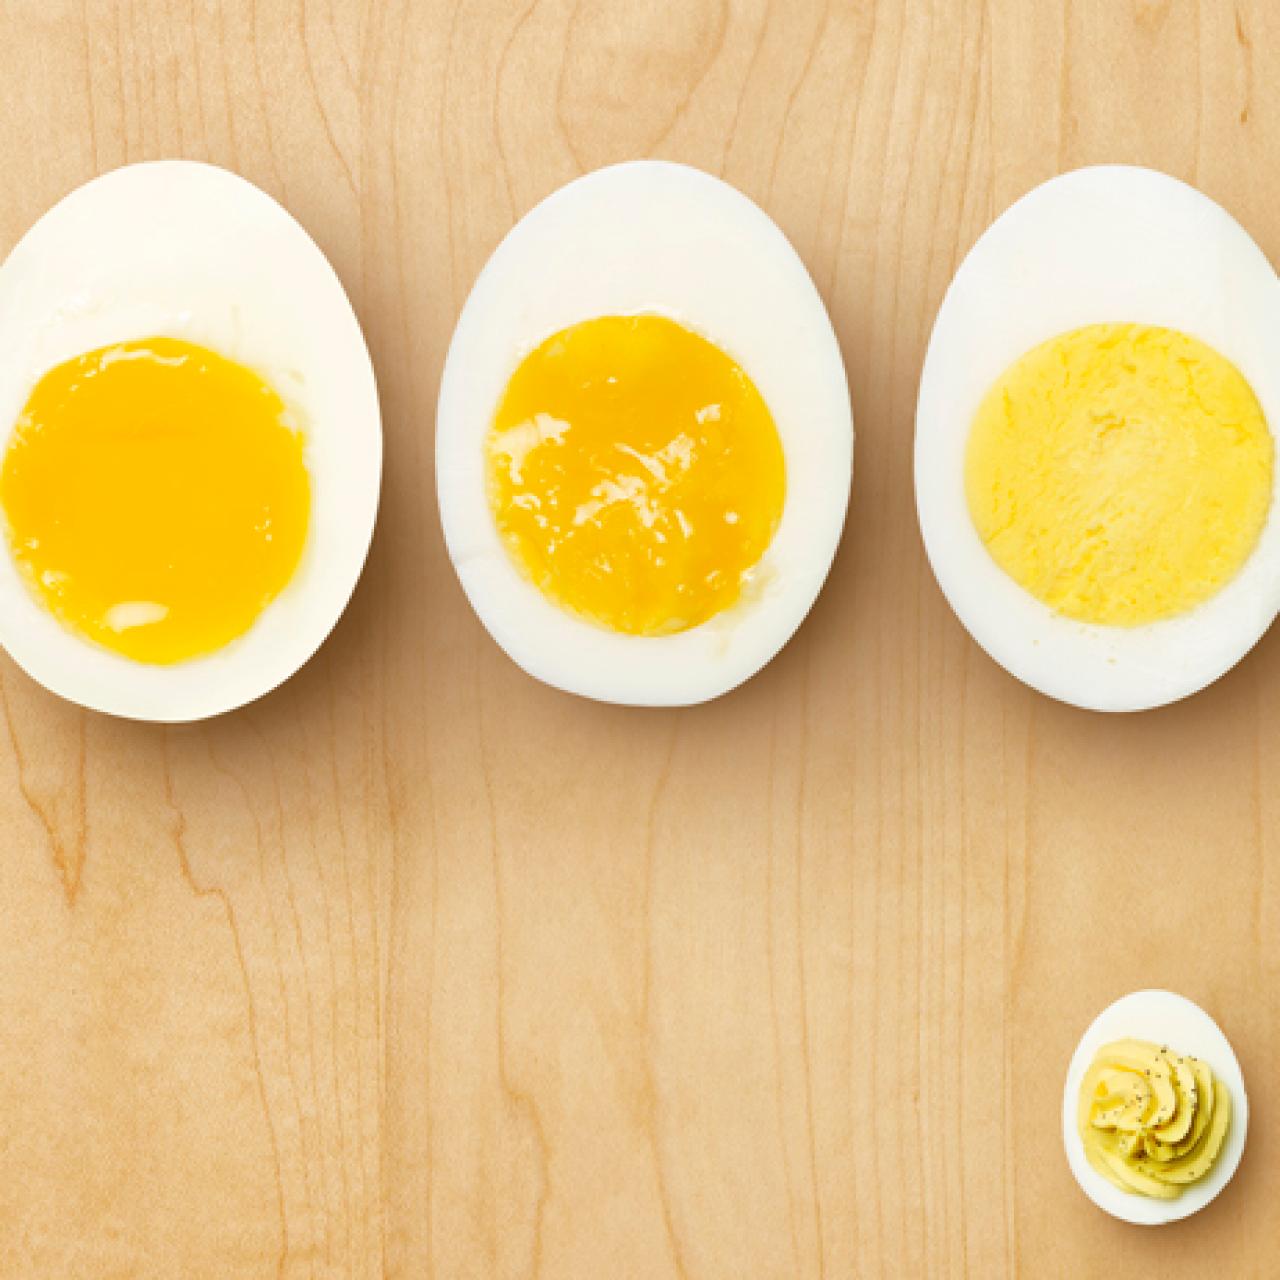 How to peel hard-boiled eggs: 5 easy steps